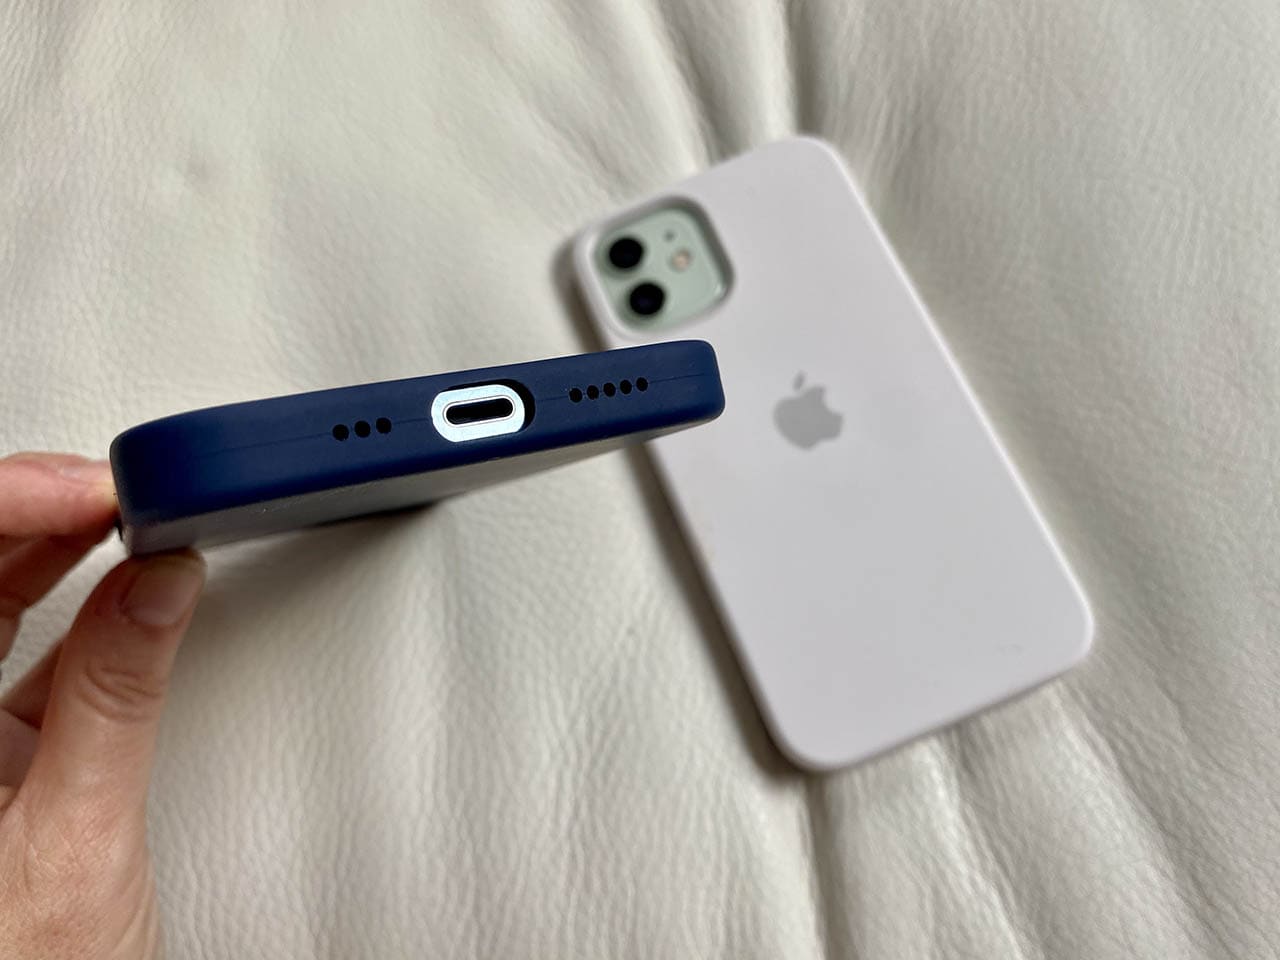 Apple siliconenhoes voor iPhone 12: opening aan onderkant